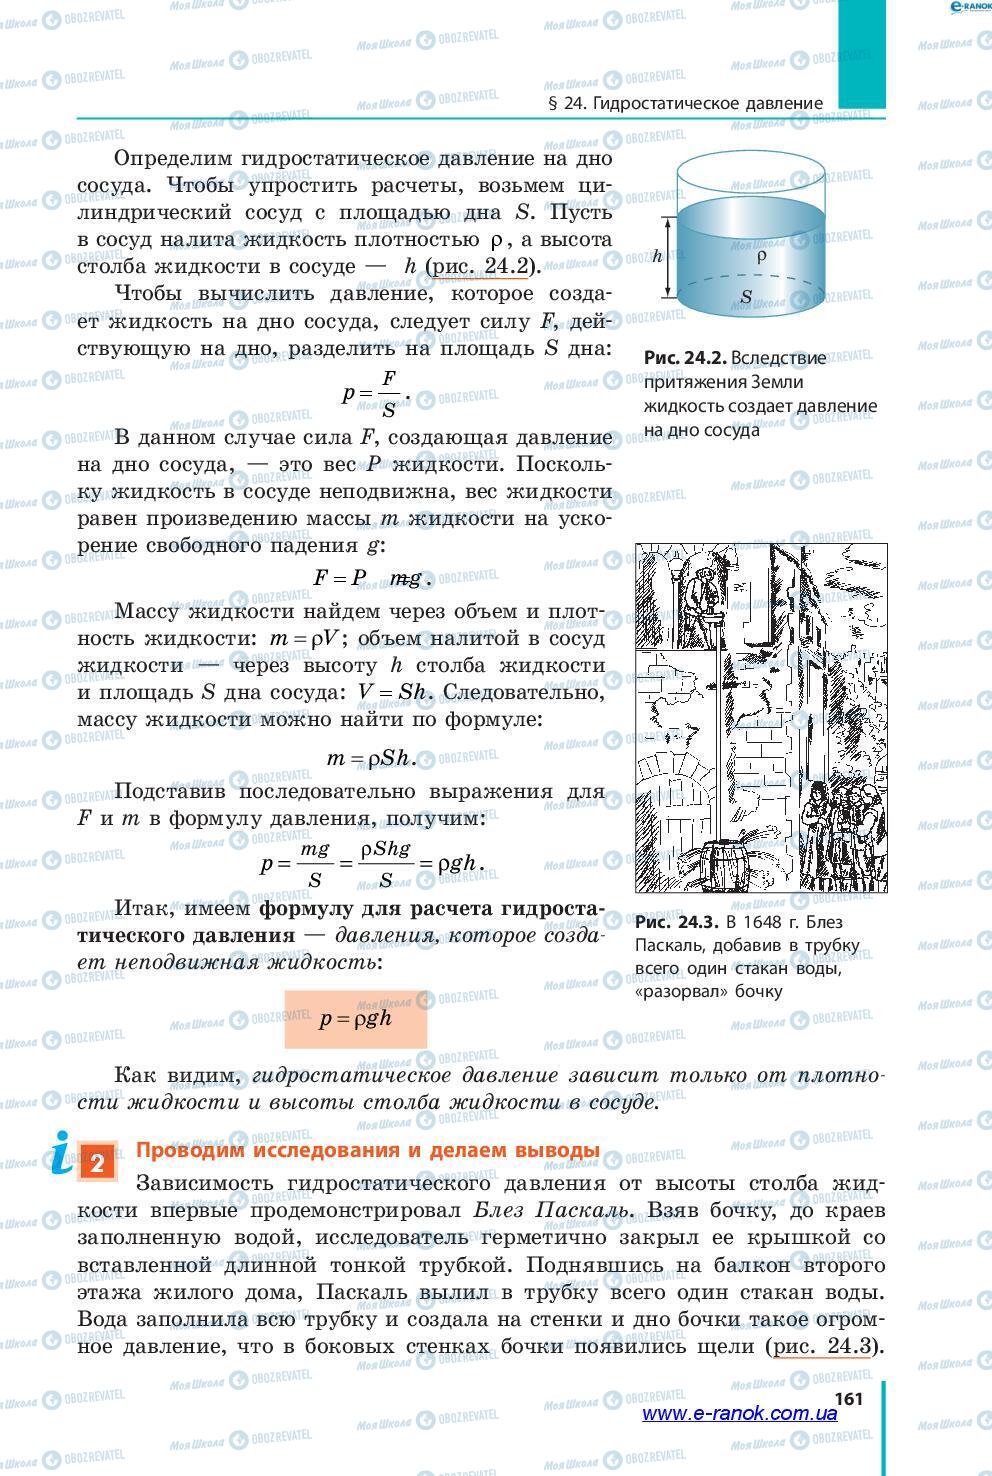 Підручники Фізика 7 клас сторінка 161